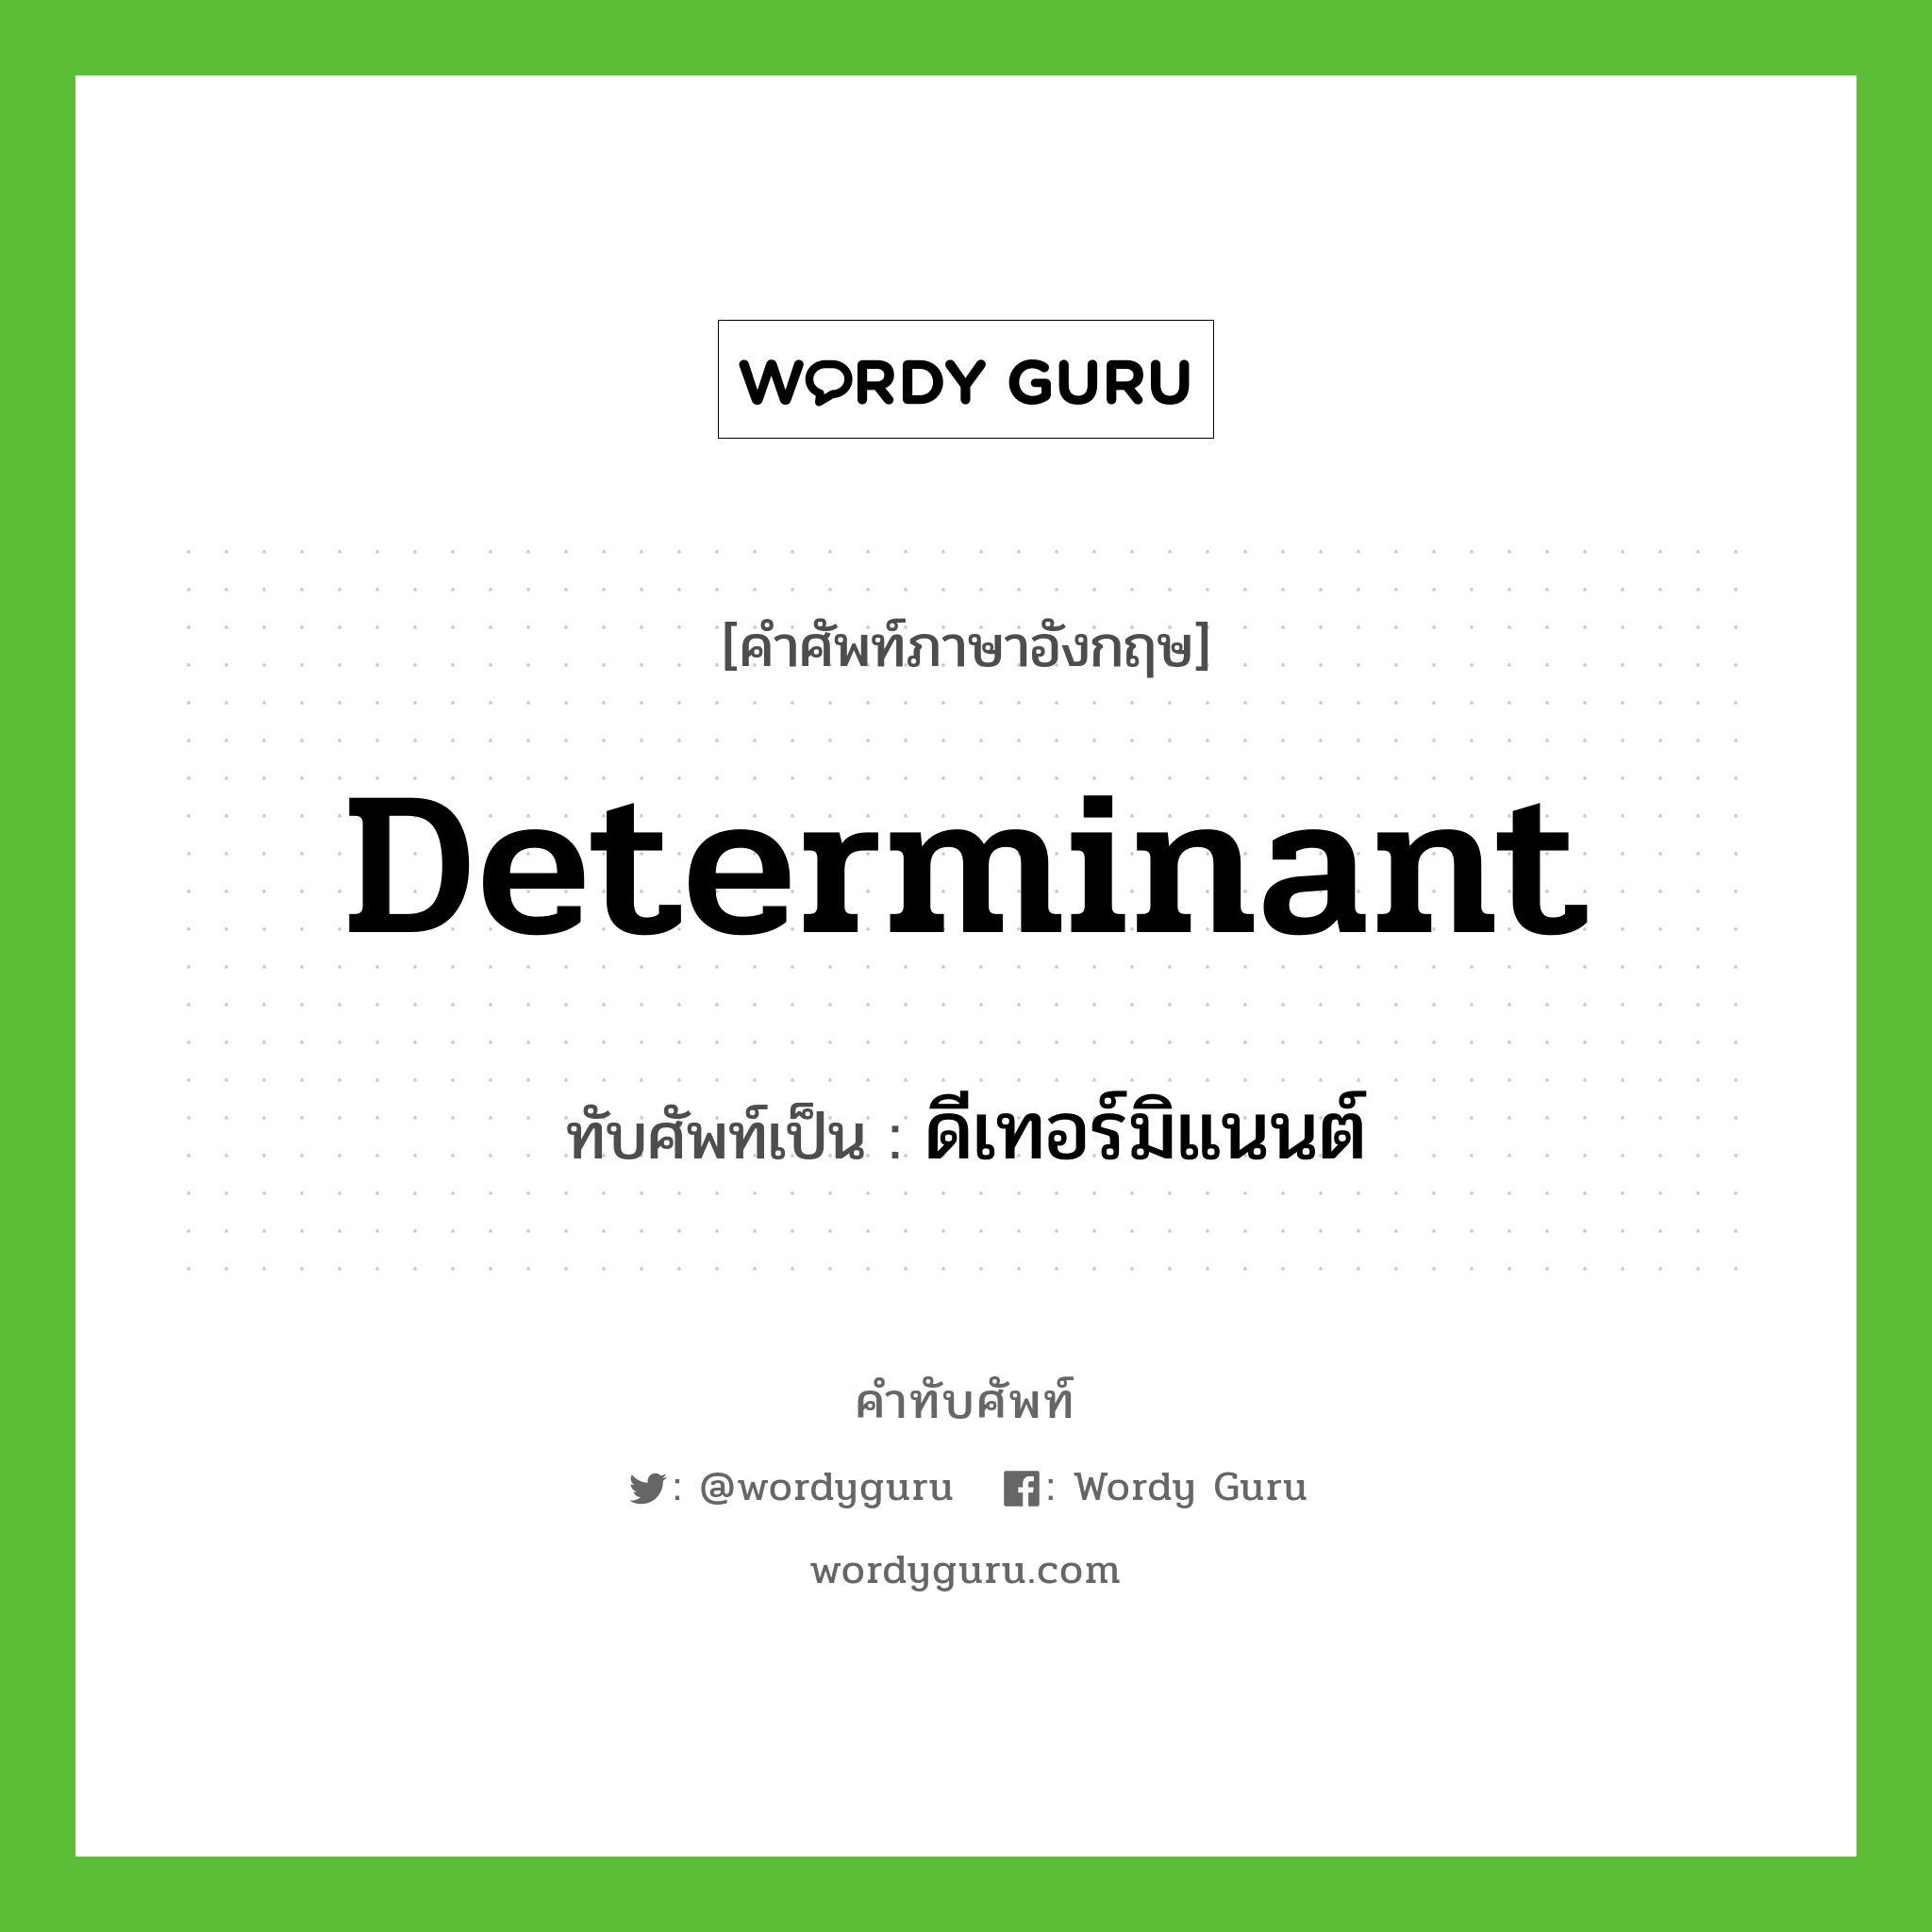 ดีเทอร์มิแนนต์ เขียนอย่างไร?, คำศัพท์ภาษาอังกฤษ ดีเทอร์มิแนนต์ ทับศัพท์เป็น determinant